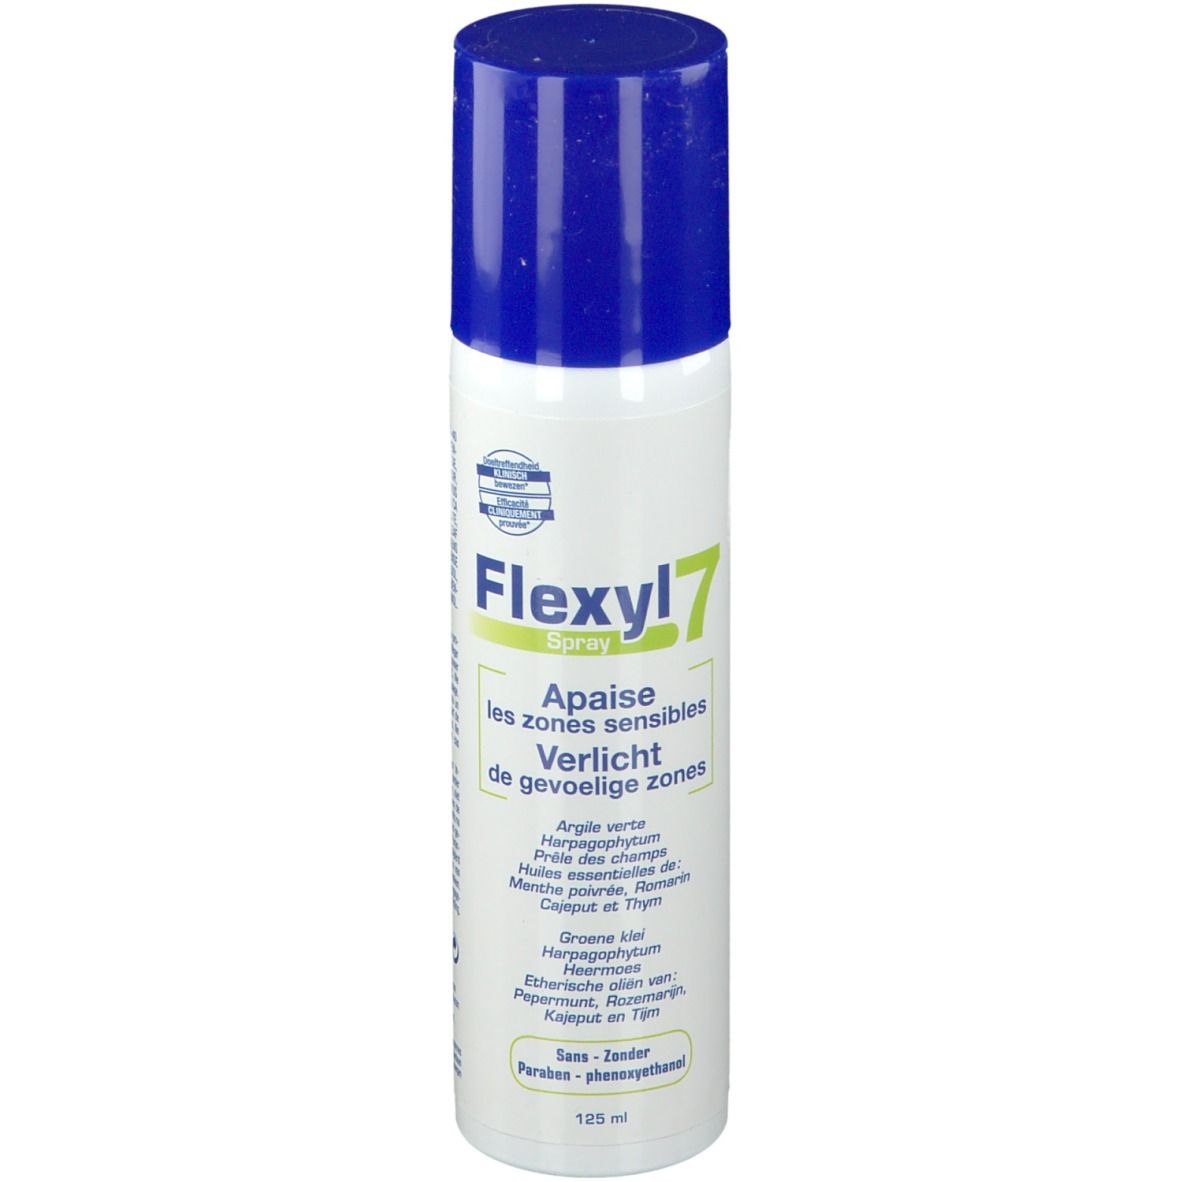 Dema Flexyl 7 Spray